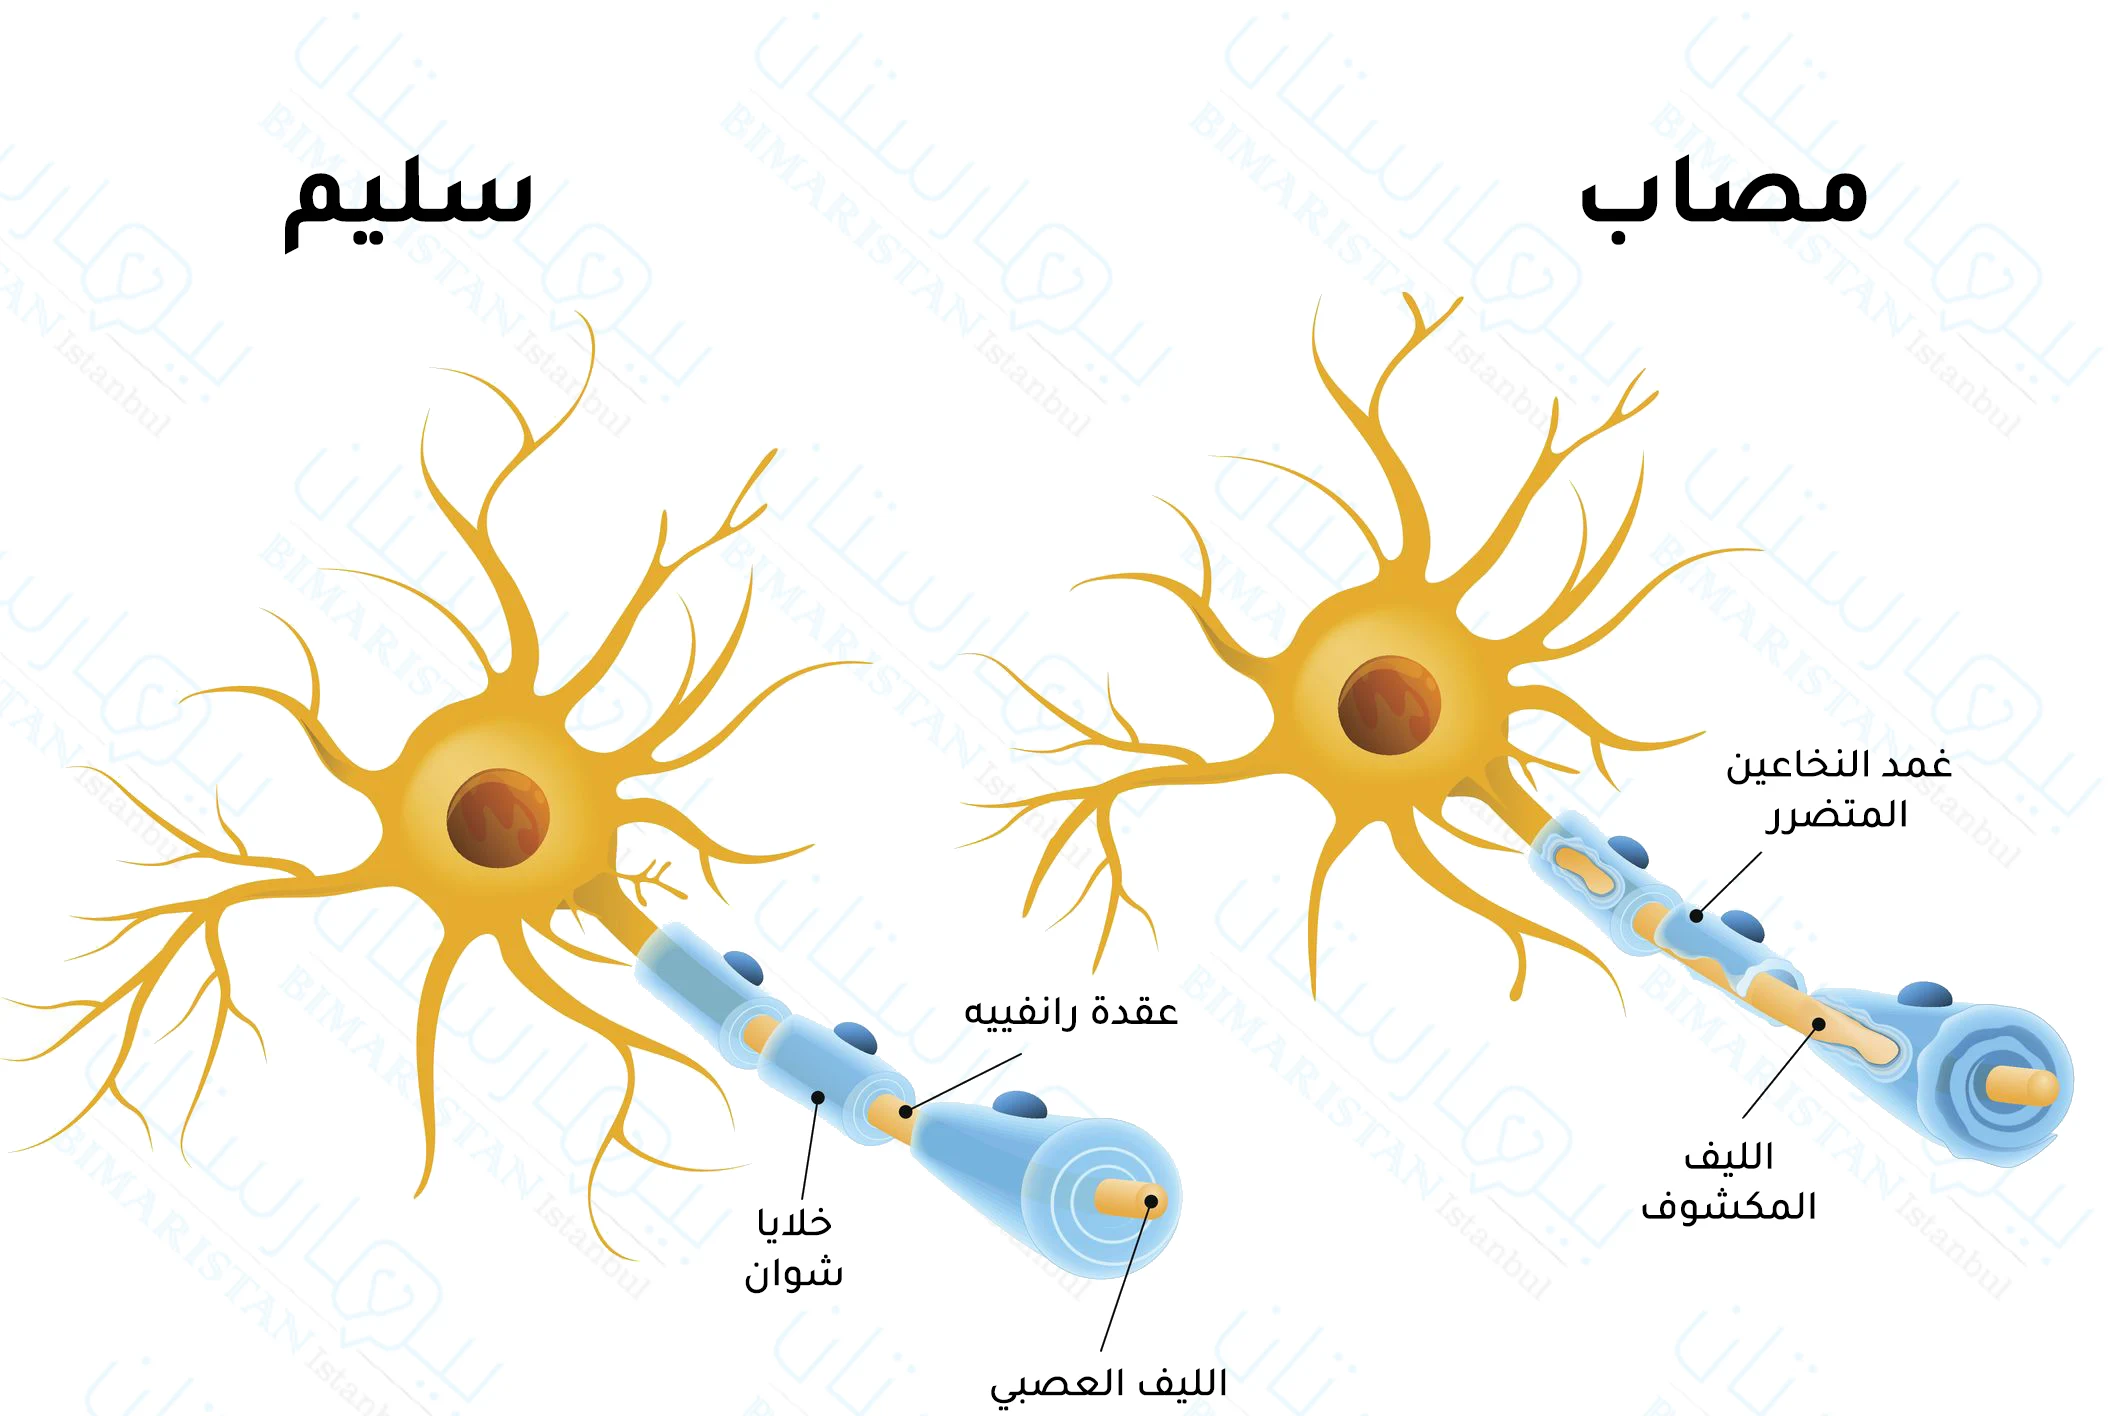 Multipl skleroz mekanizmasını ve vücudun bağışıklığının sinir lifi kılıflarına nasıl saldırdığını gösteren bir resim